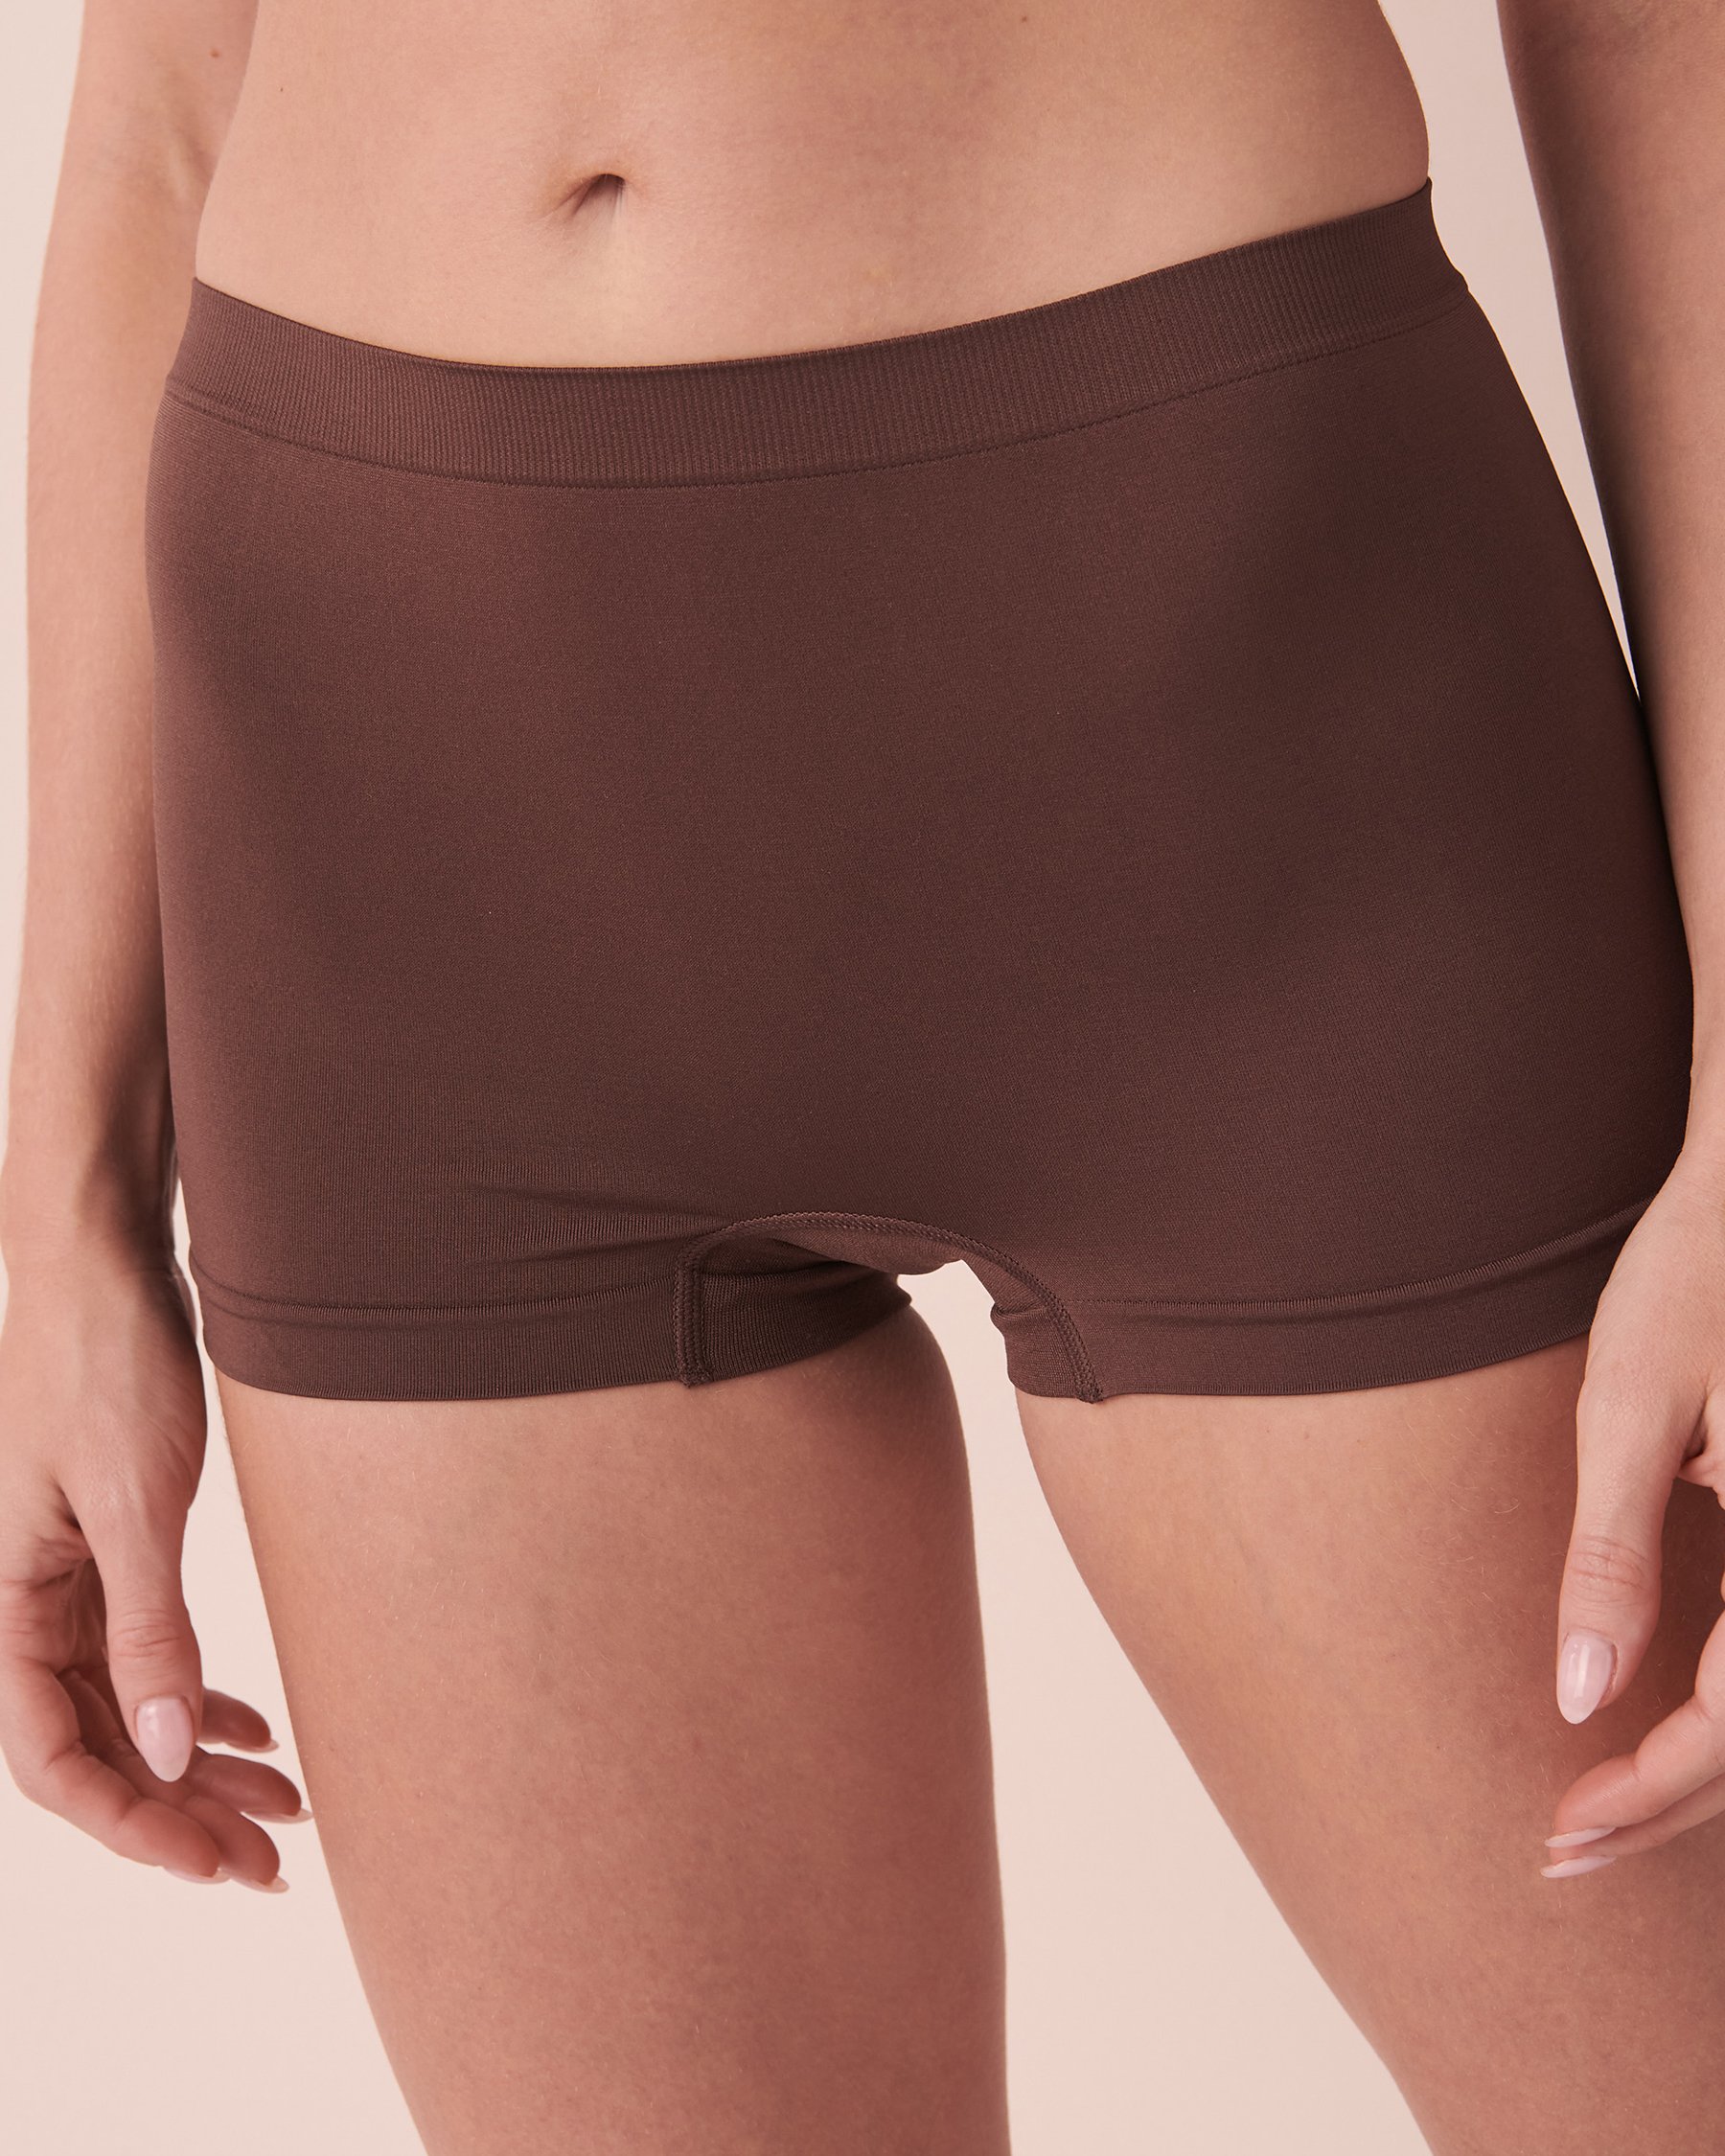 Boody Women's Boyleg Brief Underwear - Boy Shorts Underwear for